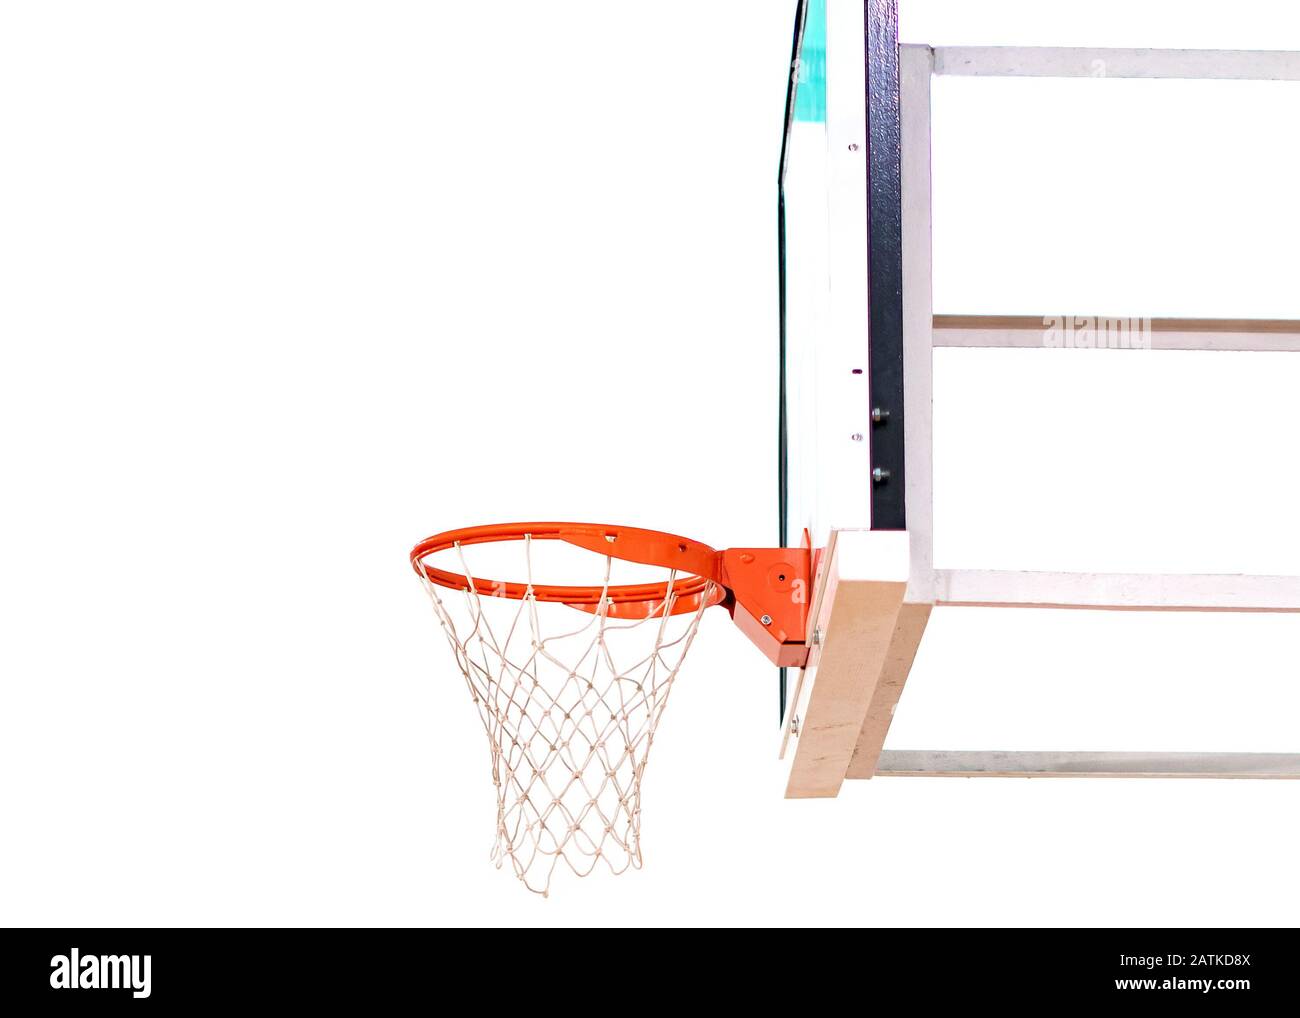 basketball backboard isolated on white background Stock Photo